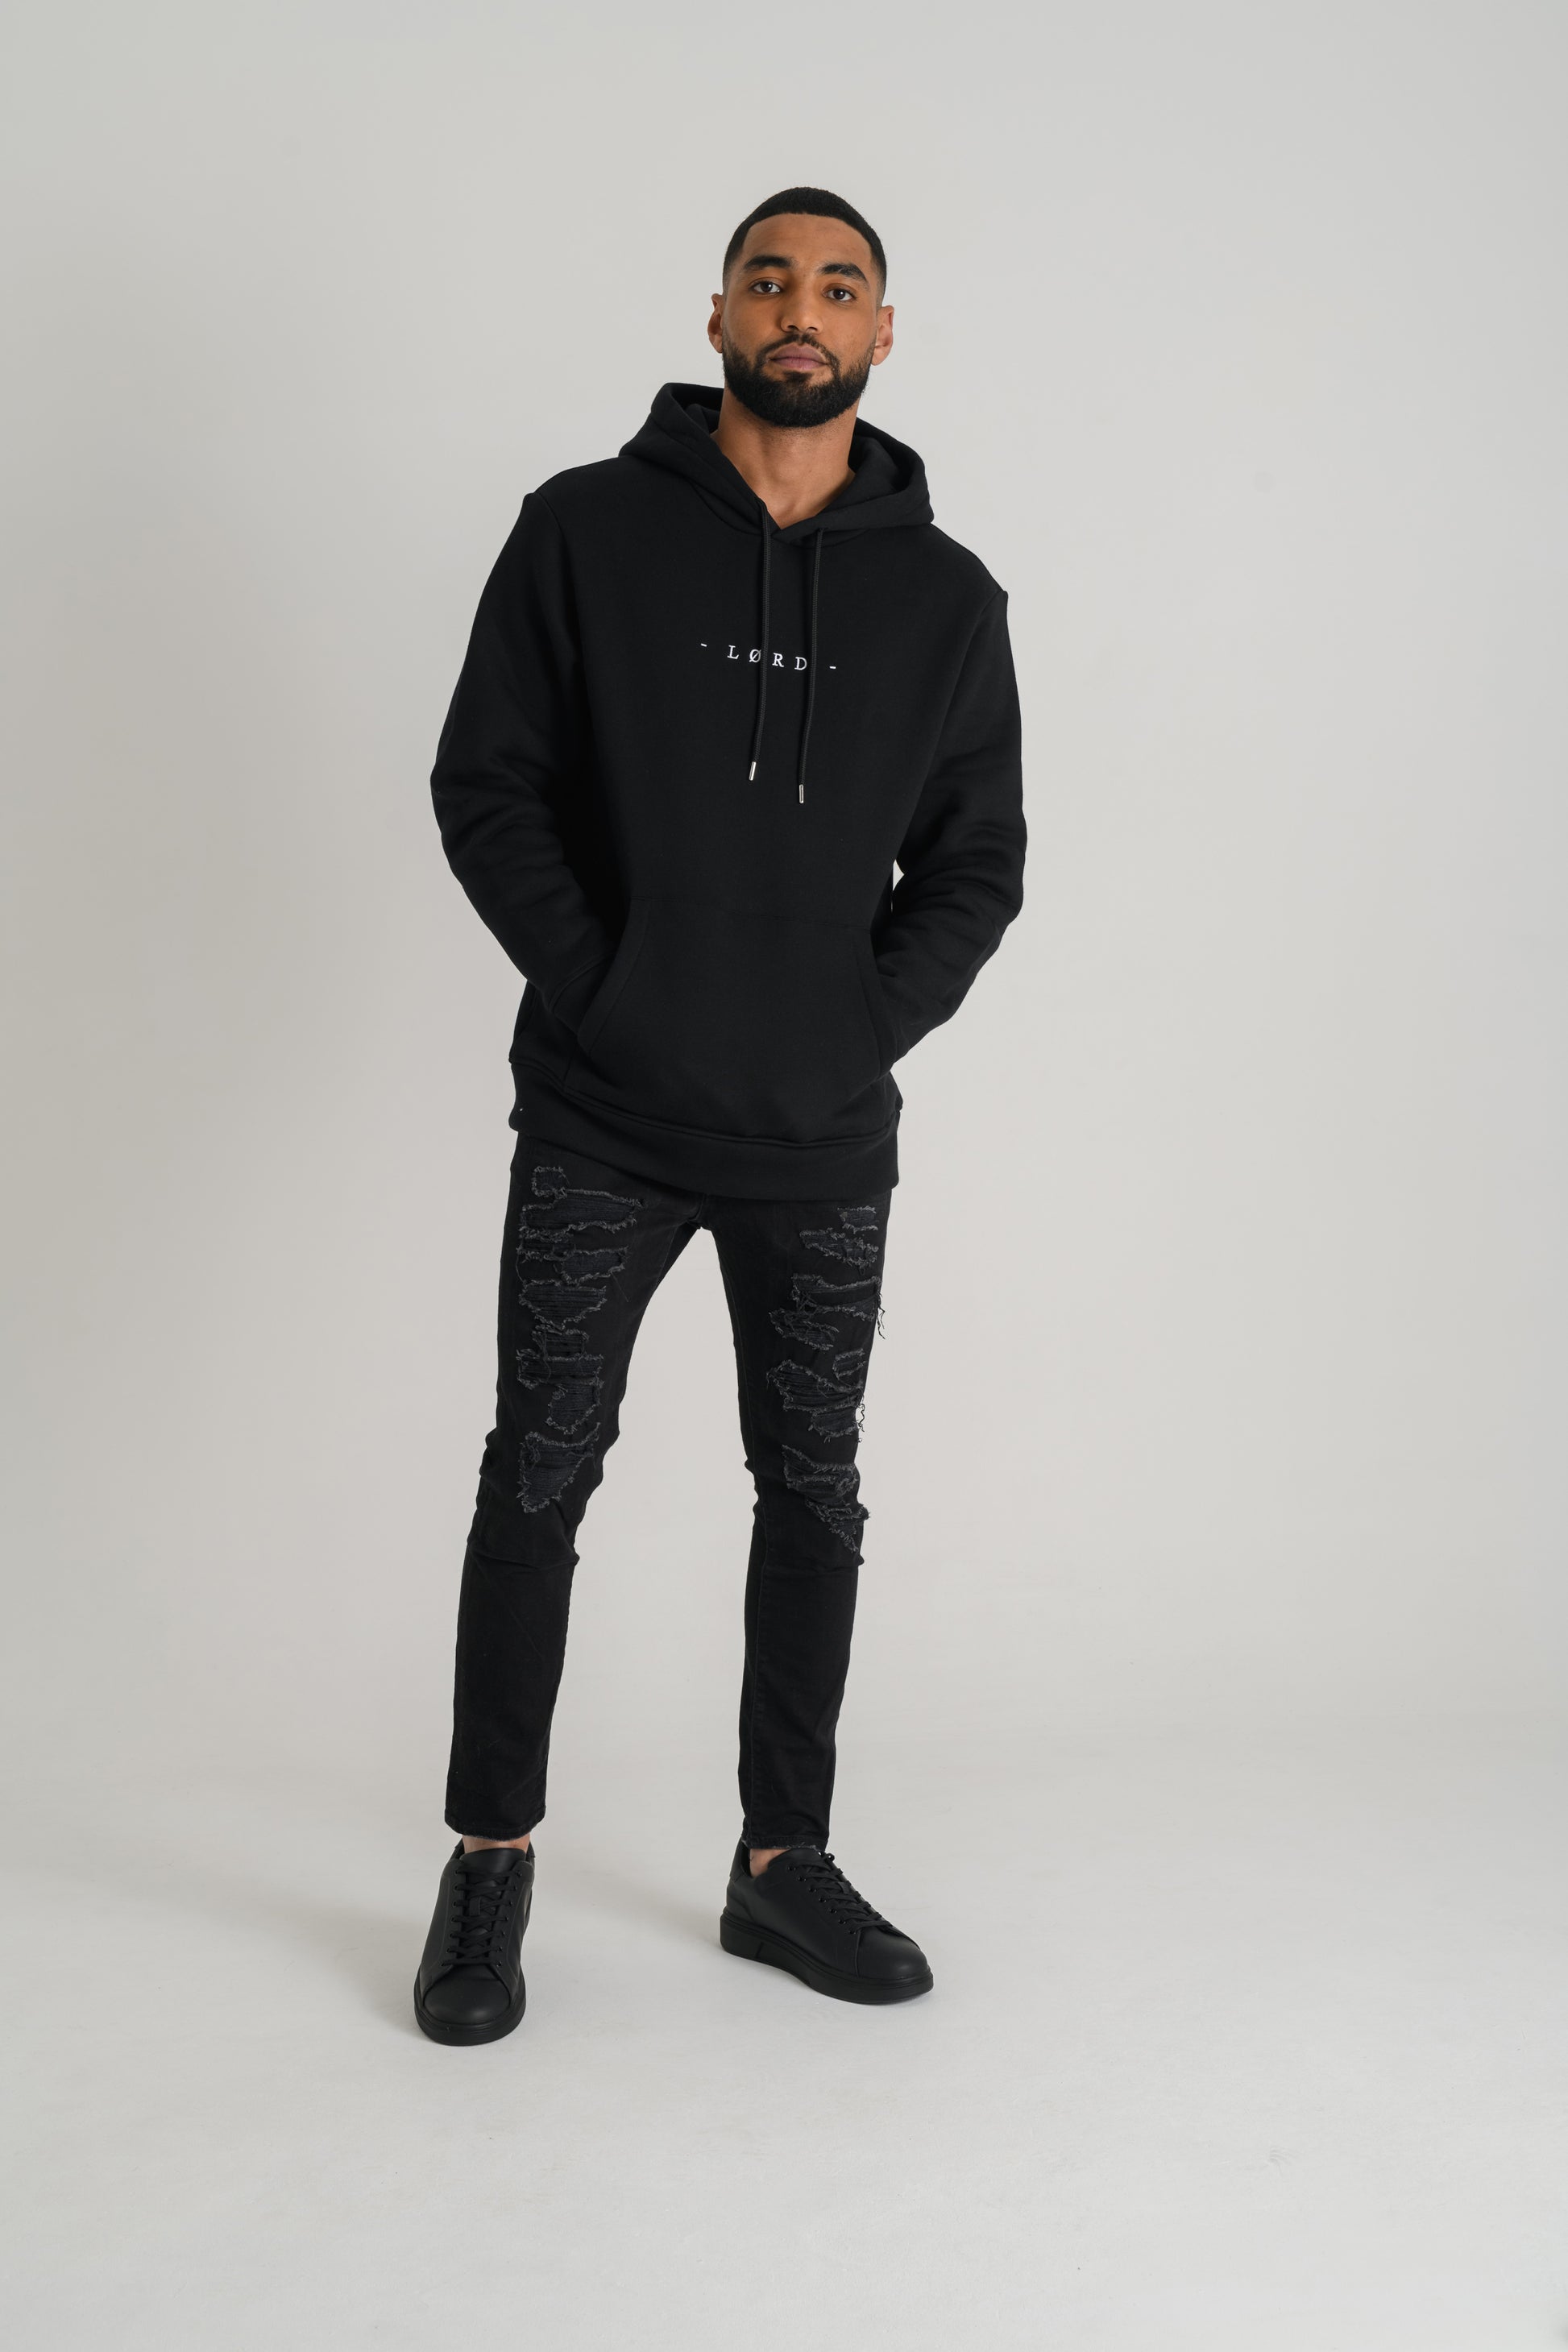 Lørd iconic black hoodie